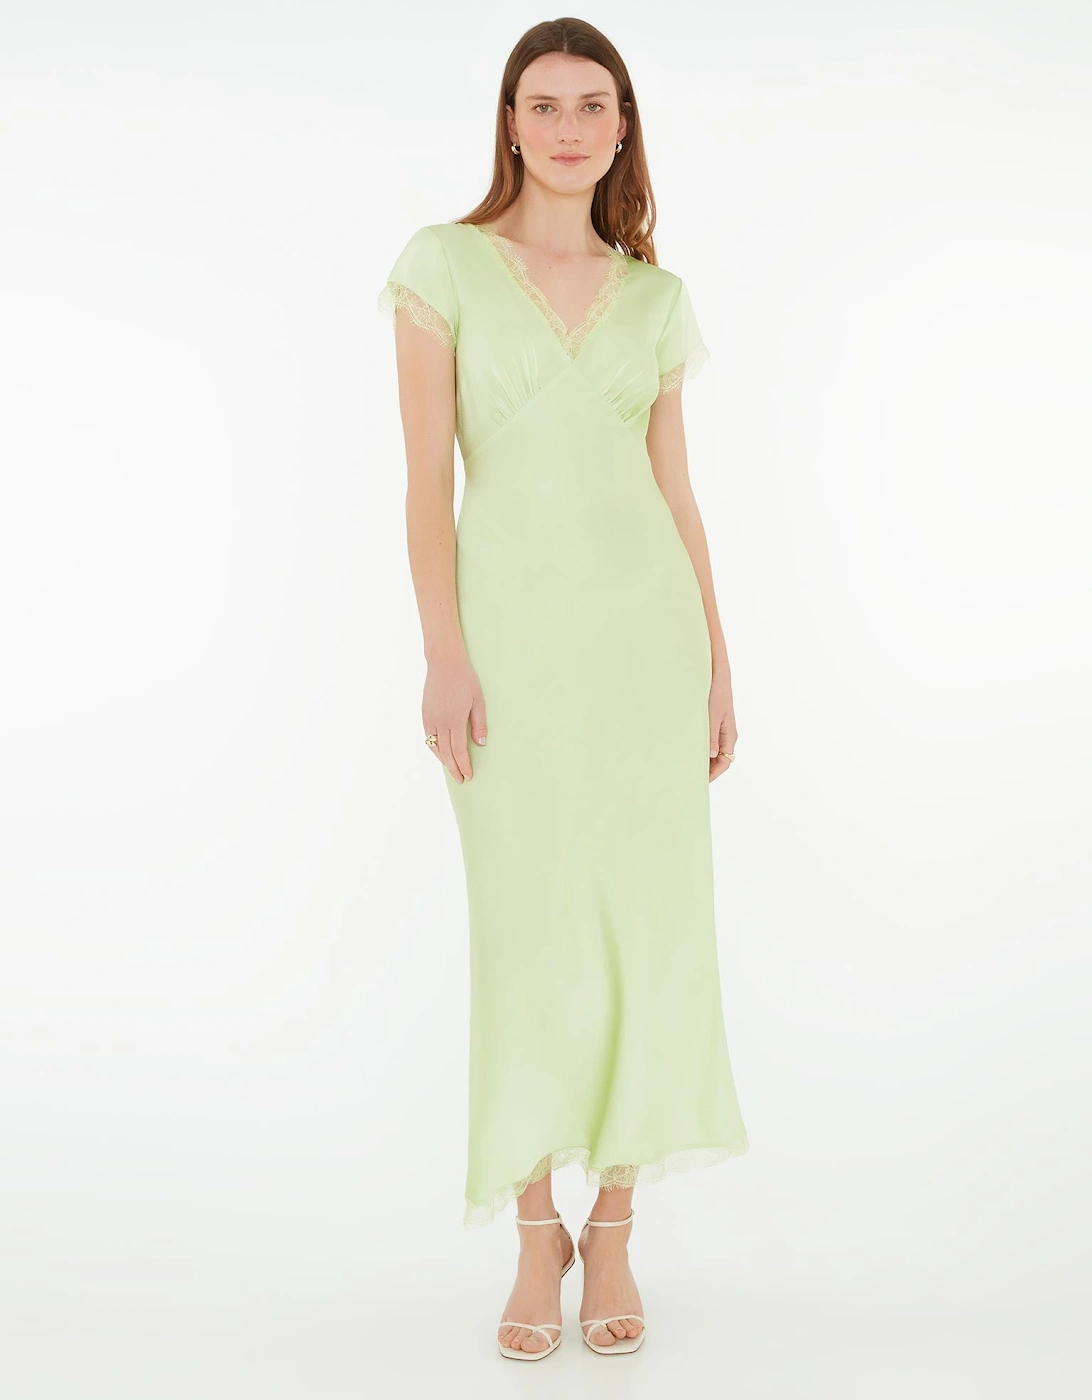 Woolf Sleeved Slip Dress in Green, 7 of 6